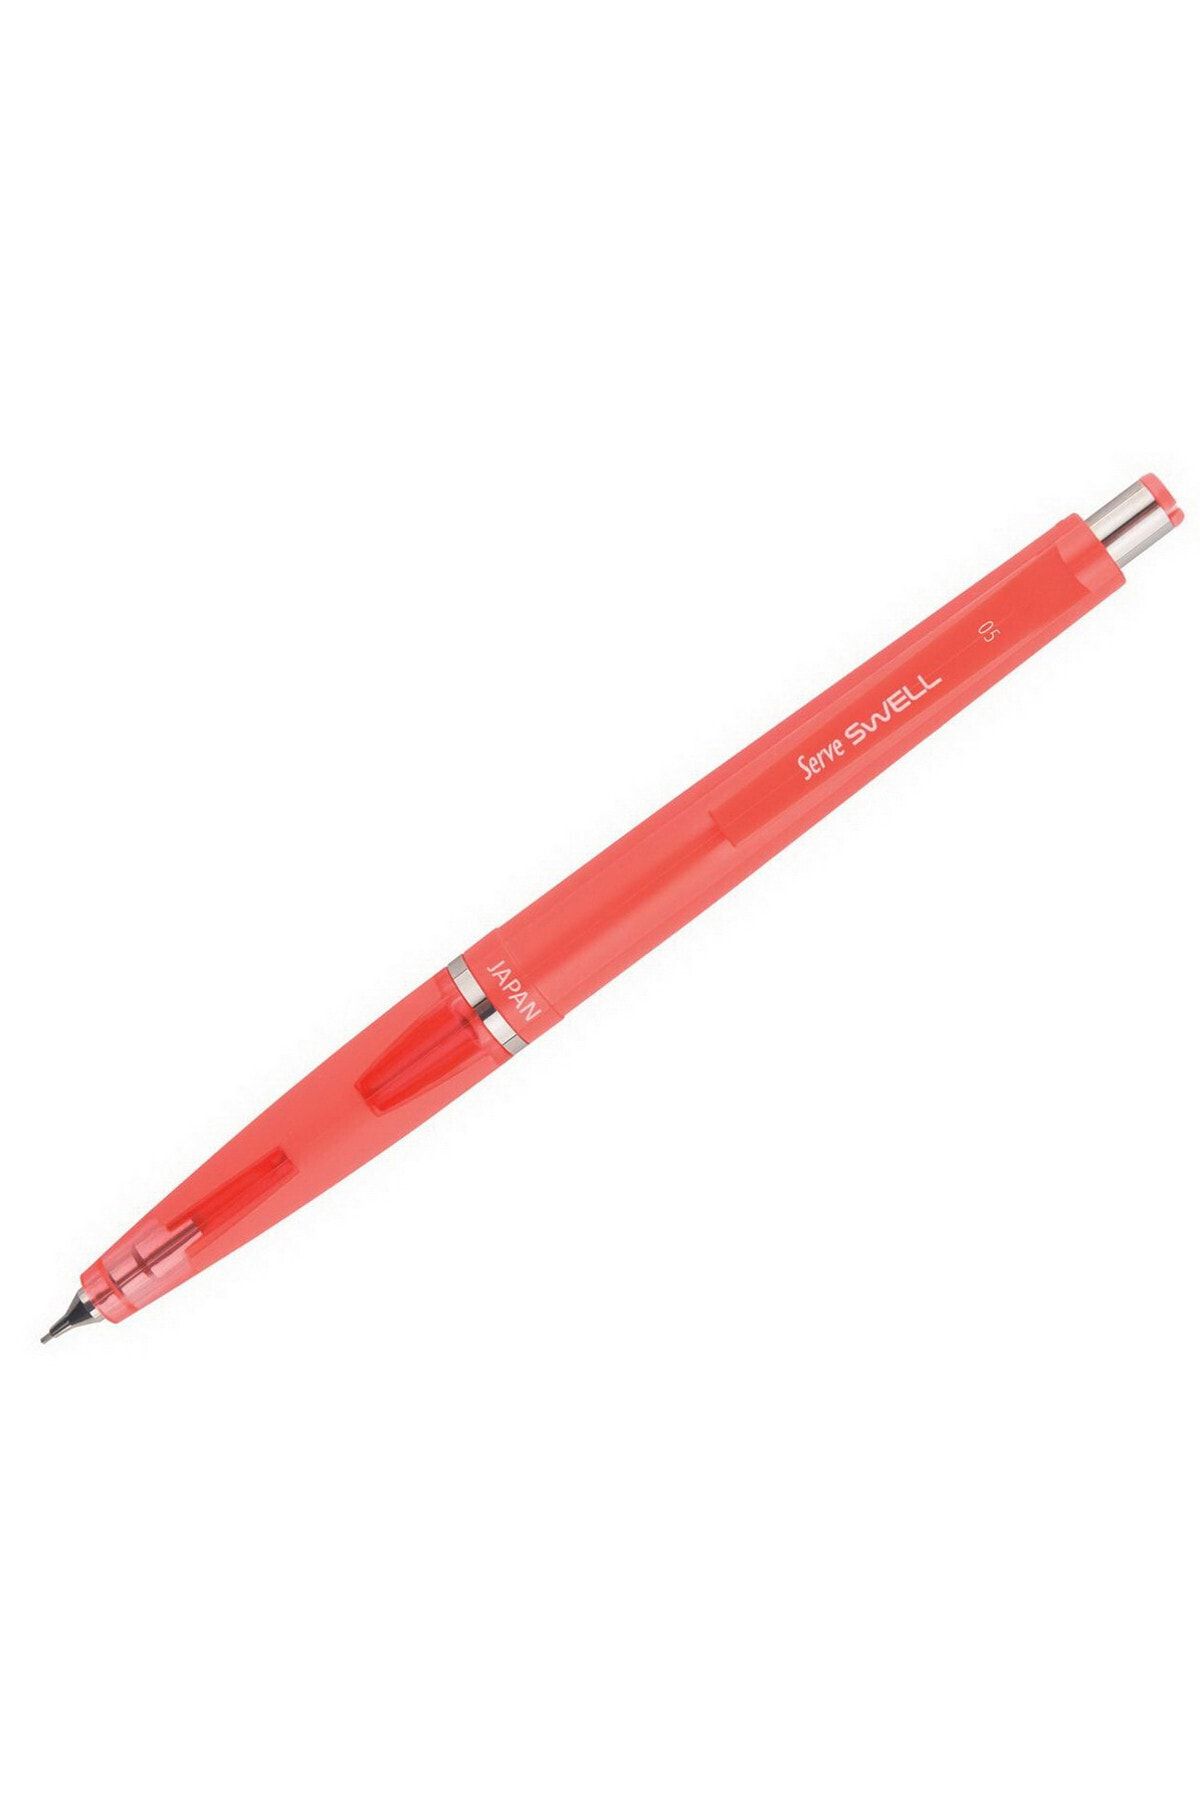 Serve Swell Mekanik Kurşun Kalem 0.5 Mm Fosforlu Kırmızı